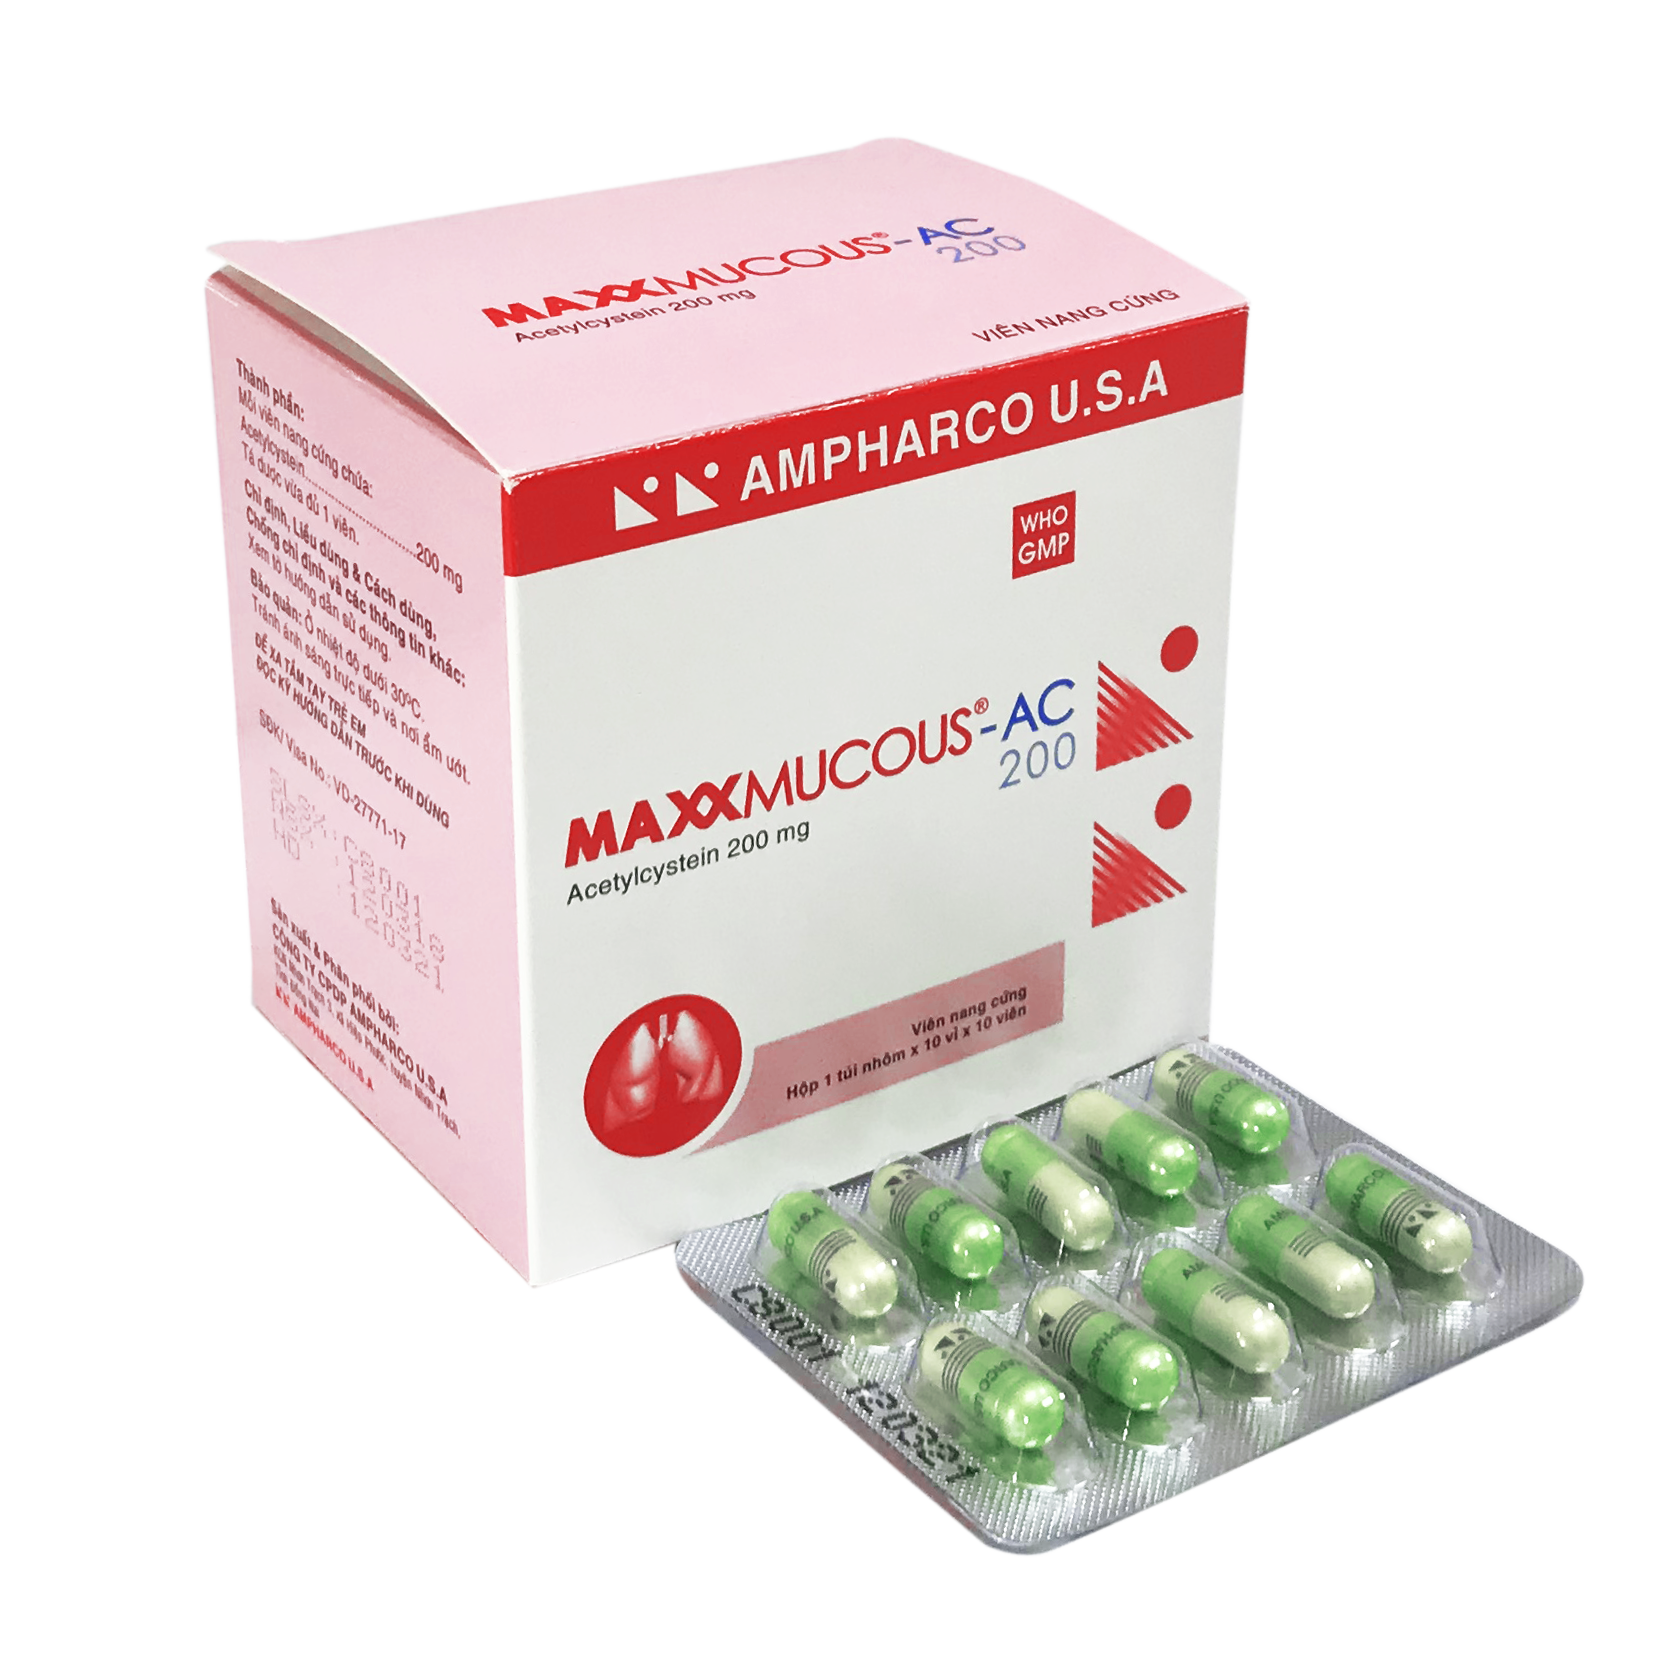 MAXXMUCOUS-AC 200 (Capsule)